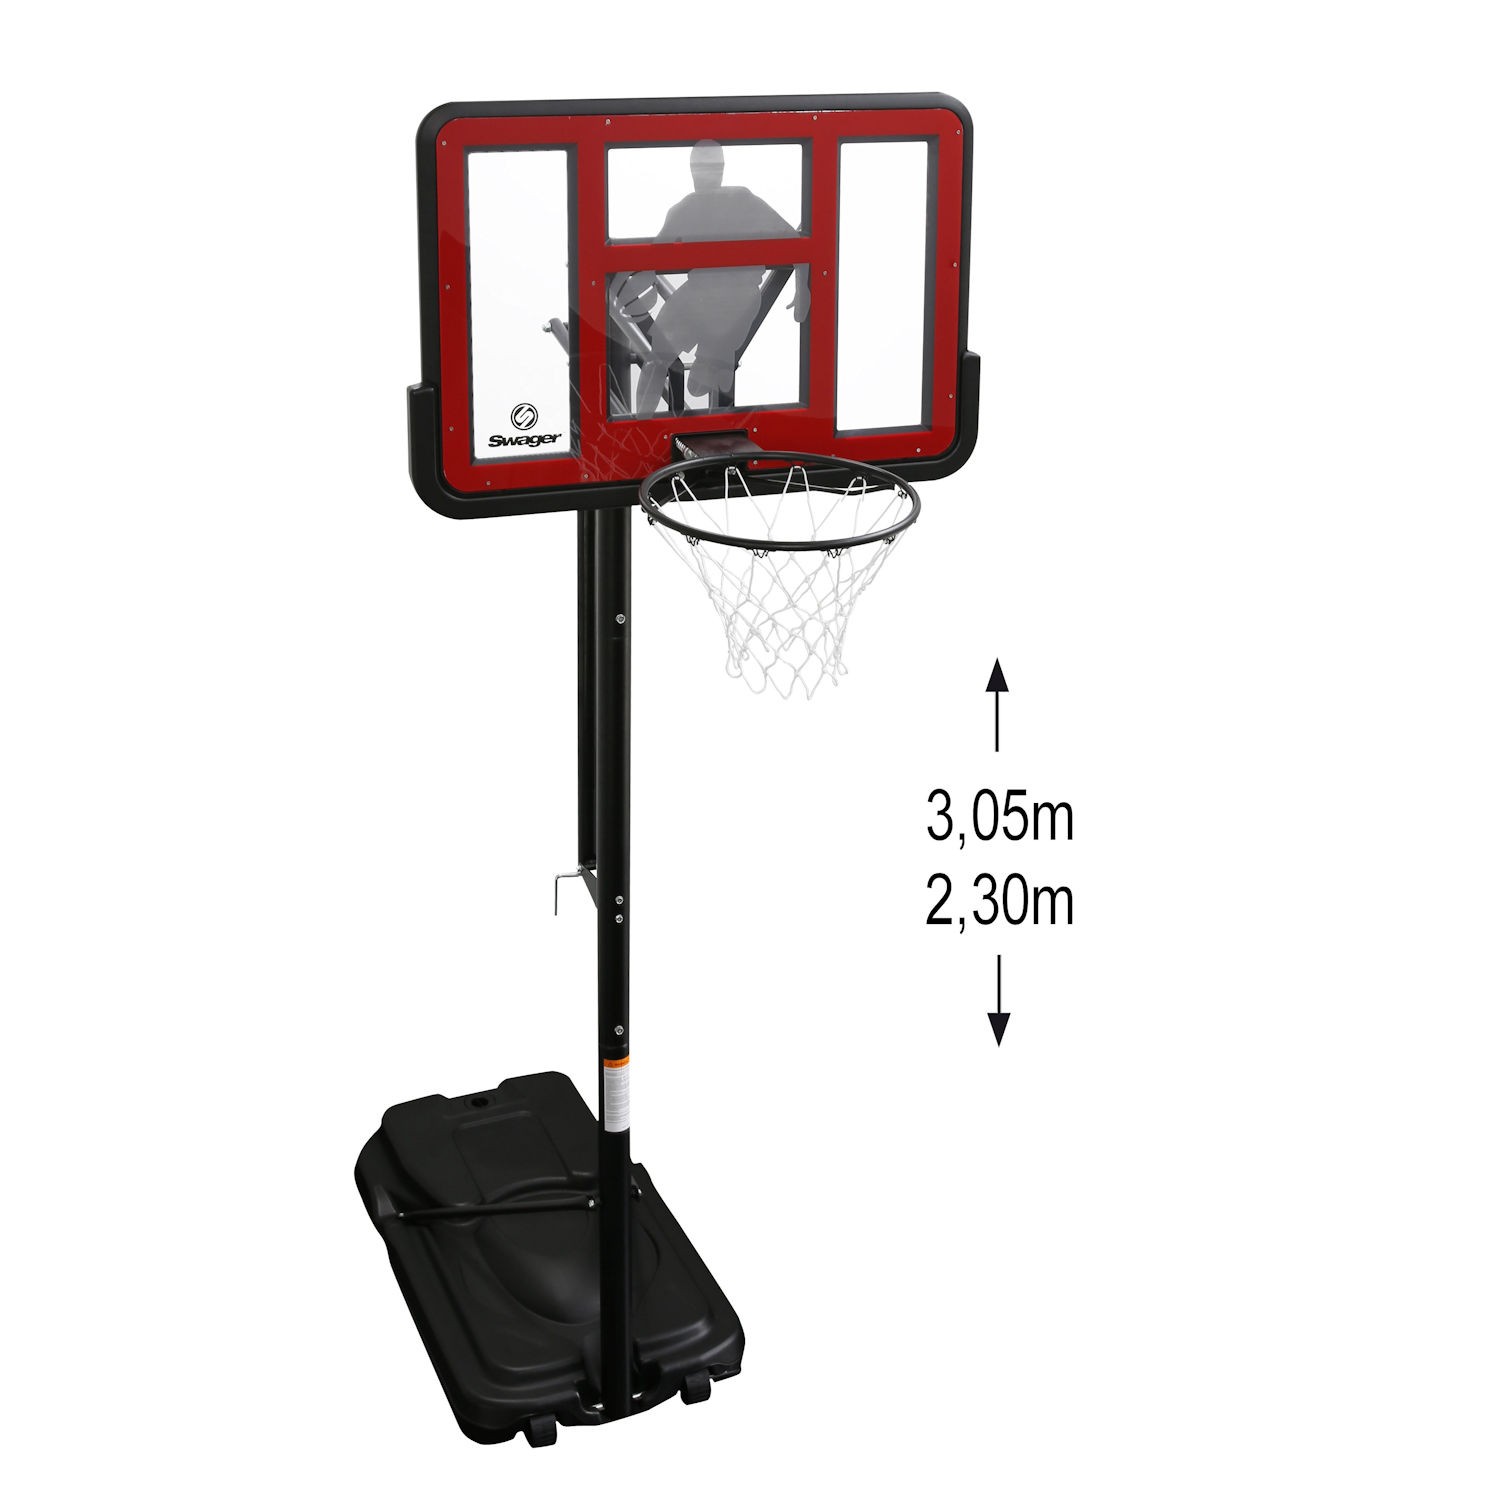 Canasta De Baloncesto King Deluxe - Ajustable 2m30 - 3m05 - rojo - 